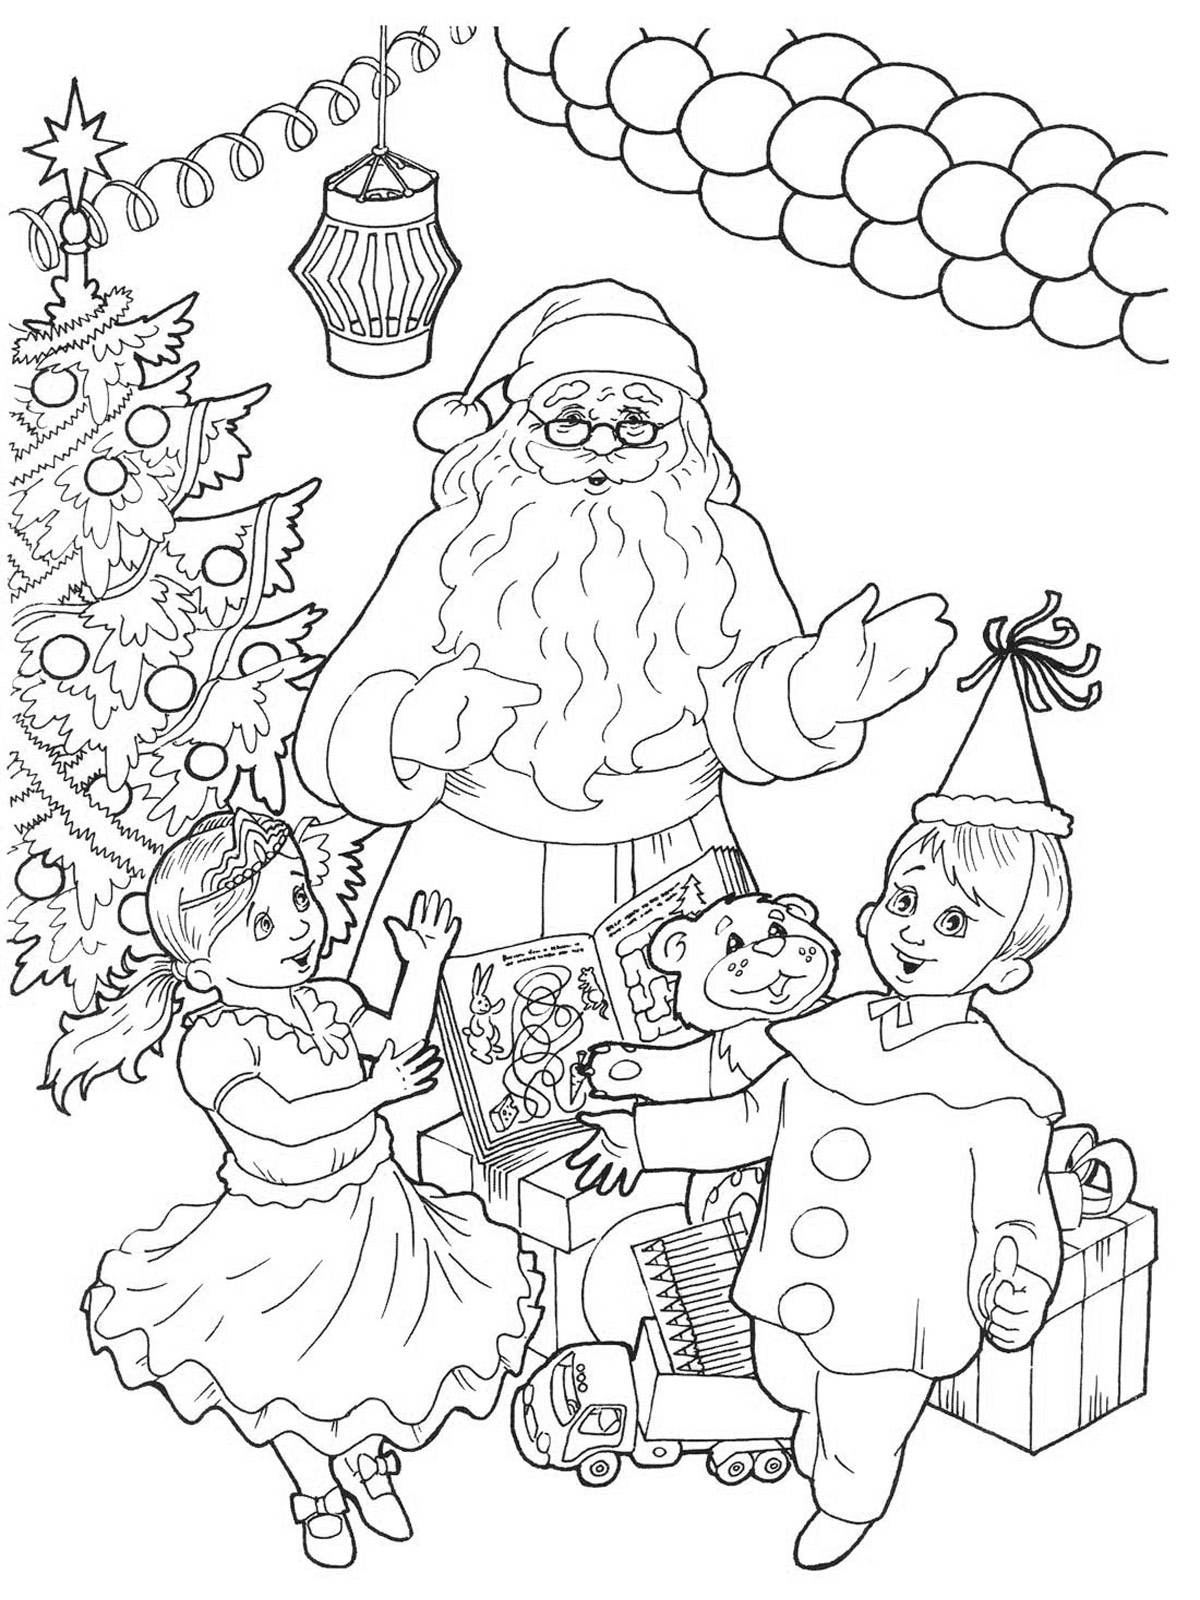 Раскраски Дед Мороз и Снегурочка распечатать бесплатно